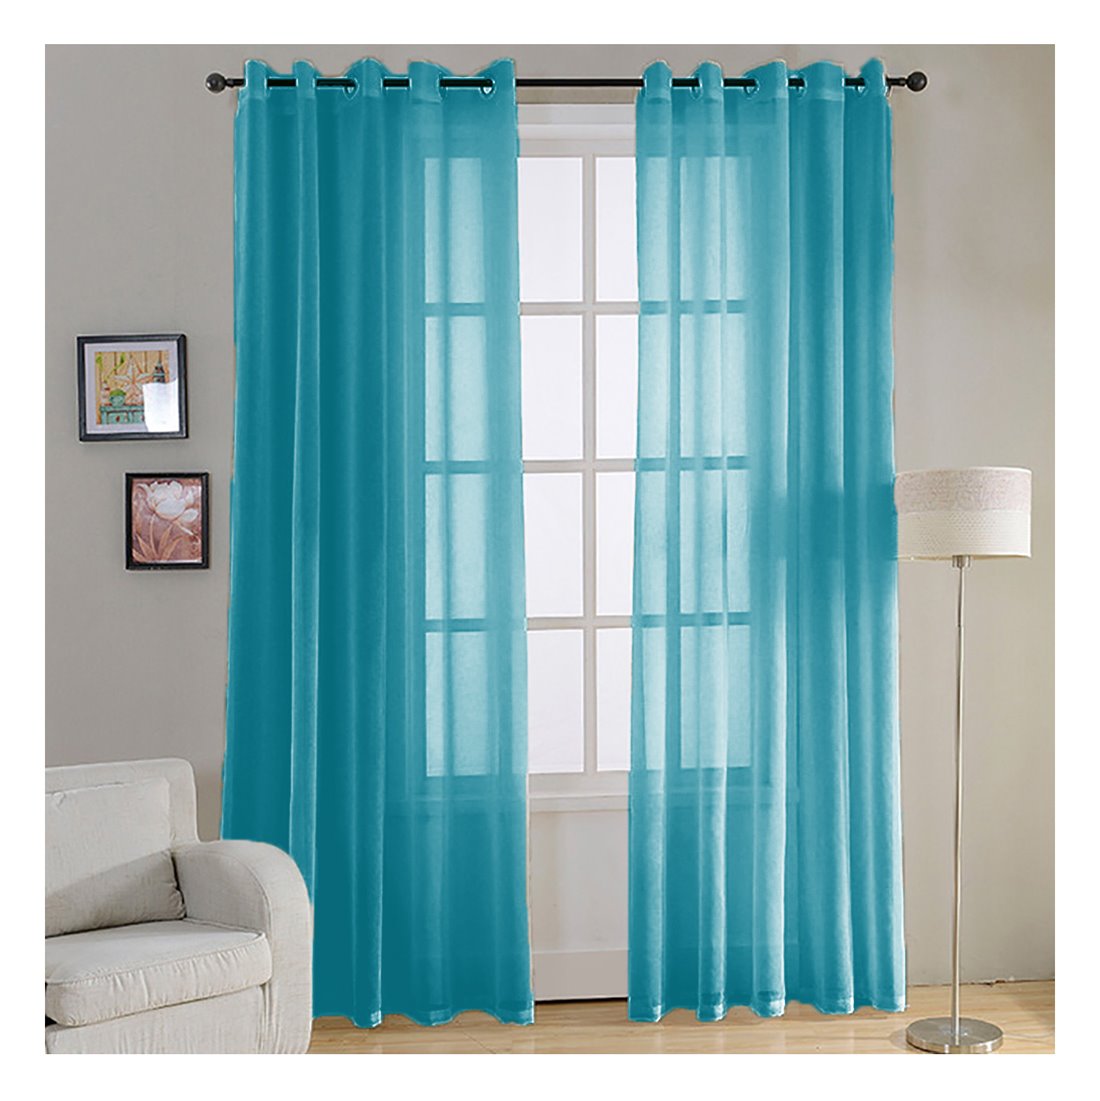 Compra barras de cortinas baratas online en tienda decoracion DCASA